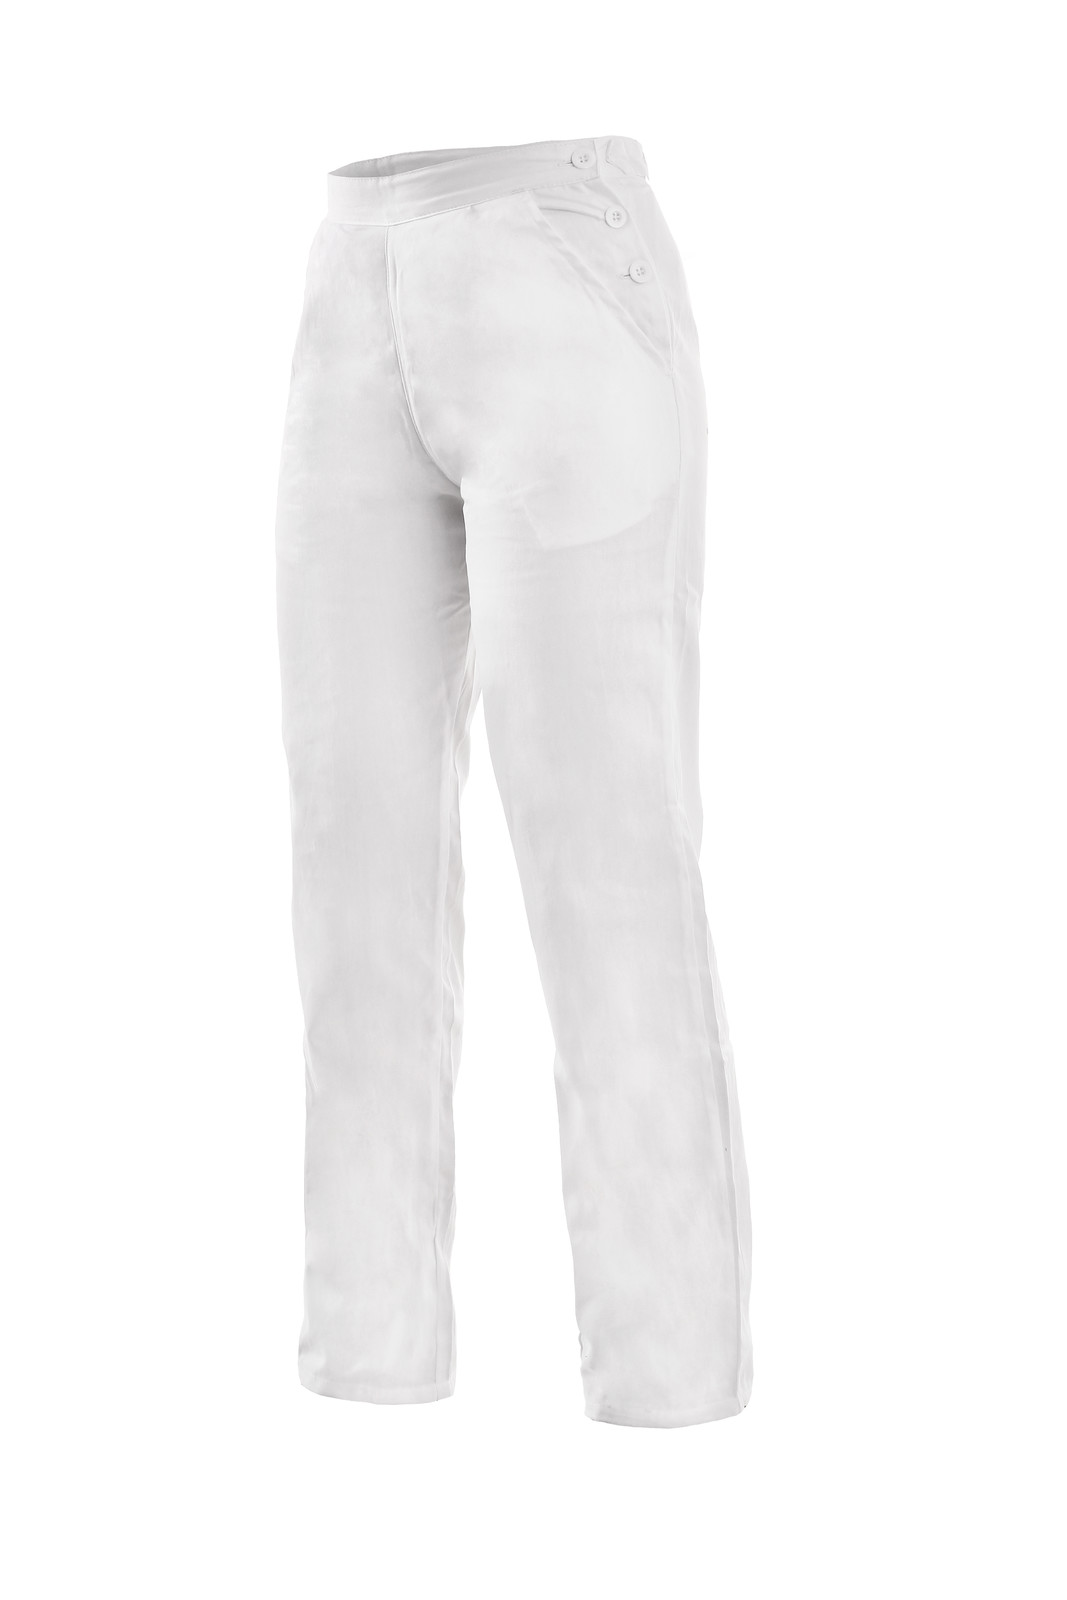 Dámske biele bavlnené nohavice Darja - veľkosť: 42, farba: biela